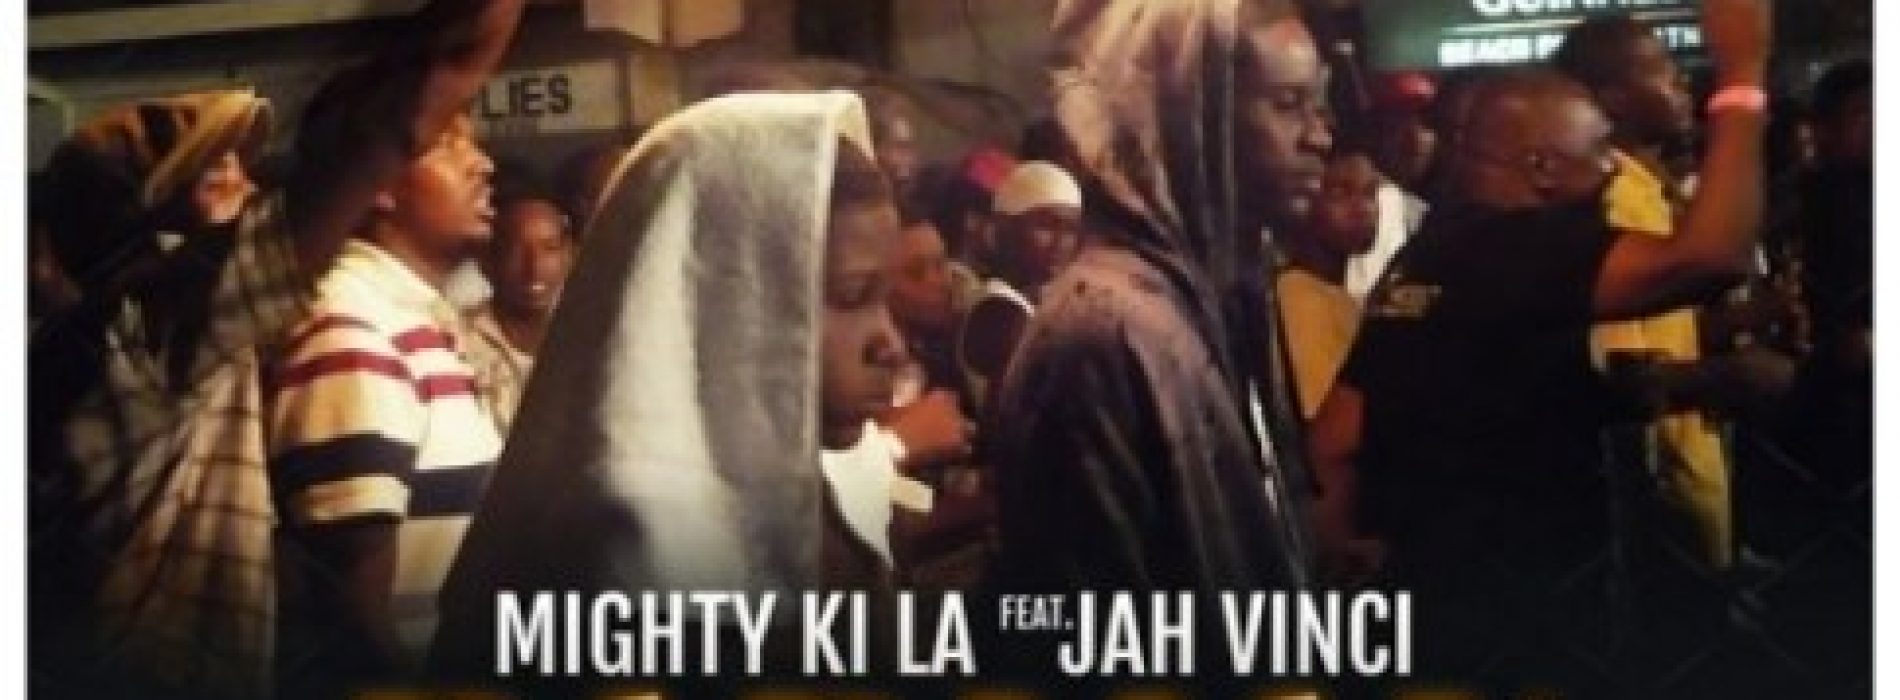 Écoute 2 titres du jamaïcain JAH VINCI – « BadMan Anthem » ( Avec MIGHTY KI LA ) et  « We Can Testify » –  et découvre le Best Of Mixtape By DJLass Angel Vibes Septembre 2017